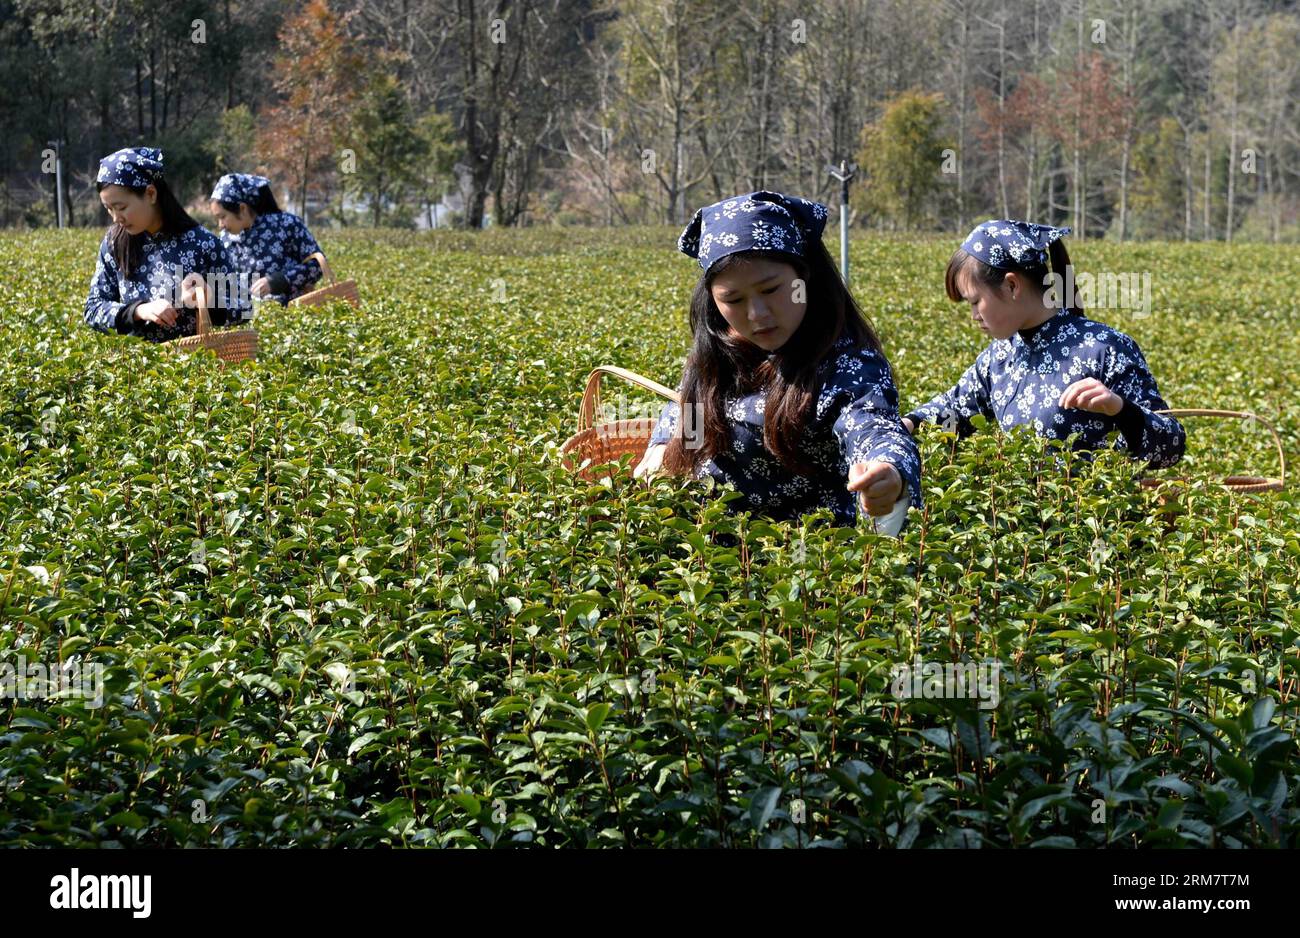 Empolyers of Jinshan Organic Tea Garden holen Teeblätter in Fuchun, Stadt Wuyuan County, ostchinesische Provinz Jiangxi ab, 15. März 2014. Mehr als 3.700 Hektar Land in Wuyuan haben eine ökologische Zertifizierung erhalten. (Xinhua/Song Zhenping) (lfj) CHINA-JIANGXI-WUYUAN-BIO-TEE (CN) PUBLICATIONxNOTxINxCHN von Jinshan Bio-TEE Garten Pick Up Teeblätter in Fuchun Stadt von Wuyuan County Ostchina S Jiangxi Provinz März 15 2014 mehr als 3 700 Hektar Land in Wuyuan haben Bio-Zertifizierung XINHUA Song Zhenping China Jiangxi WuxBLINCN Bio-Tee Stockfoto